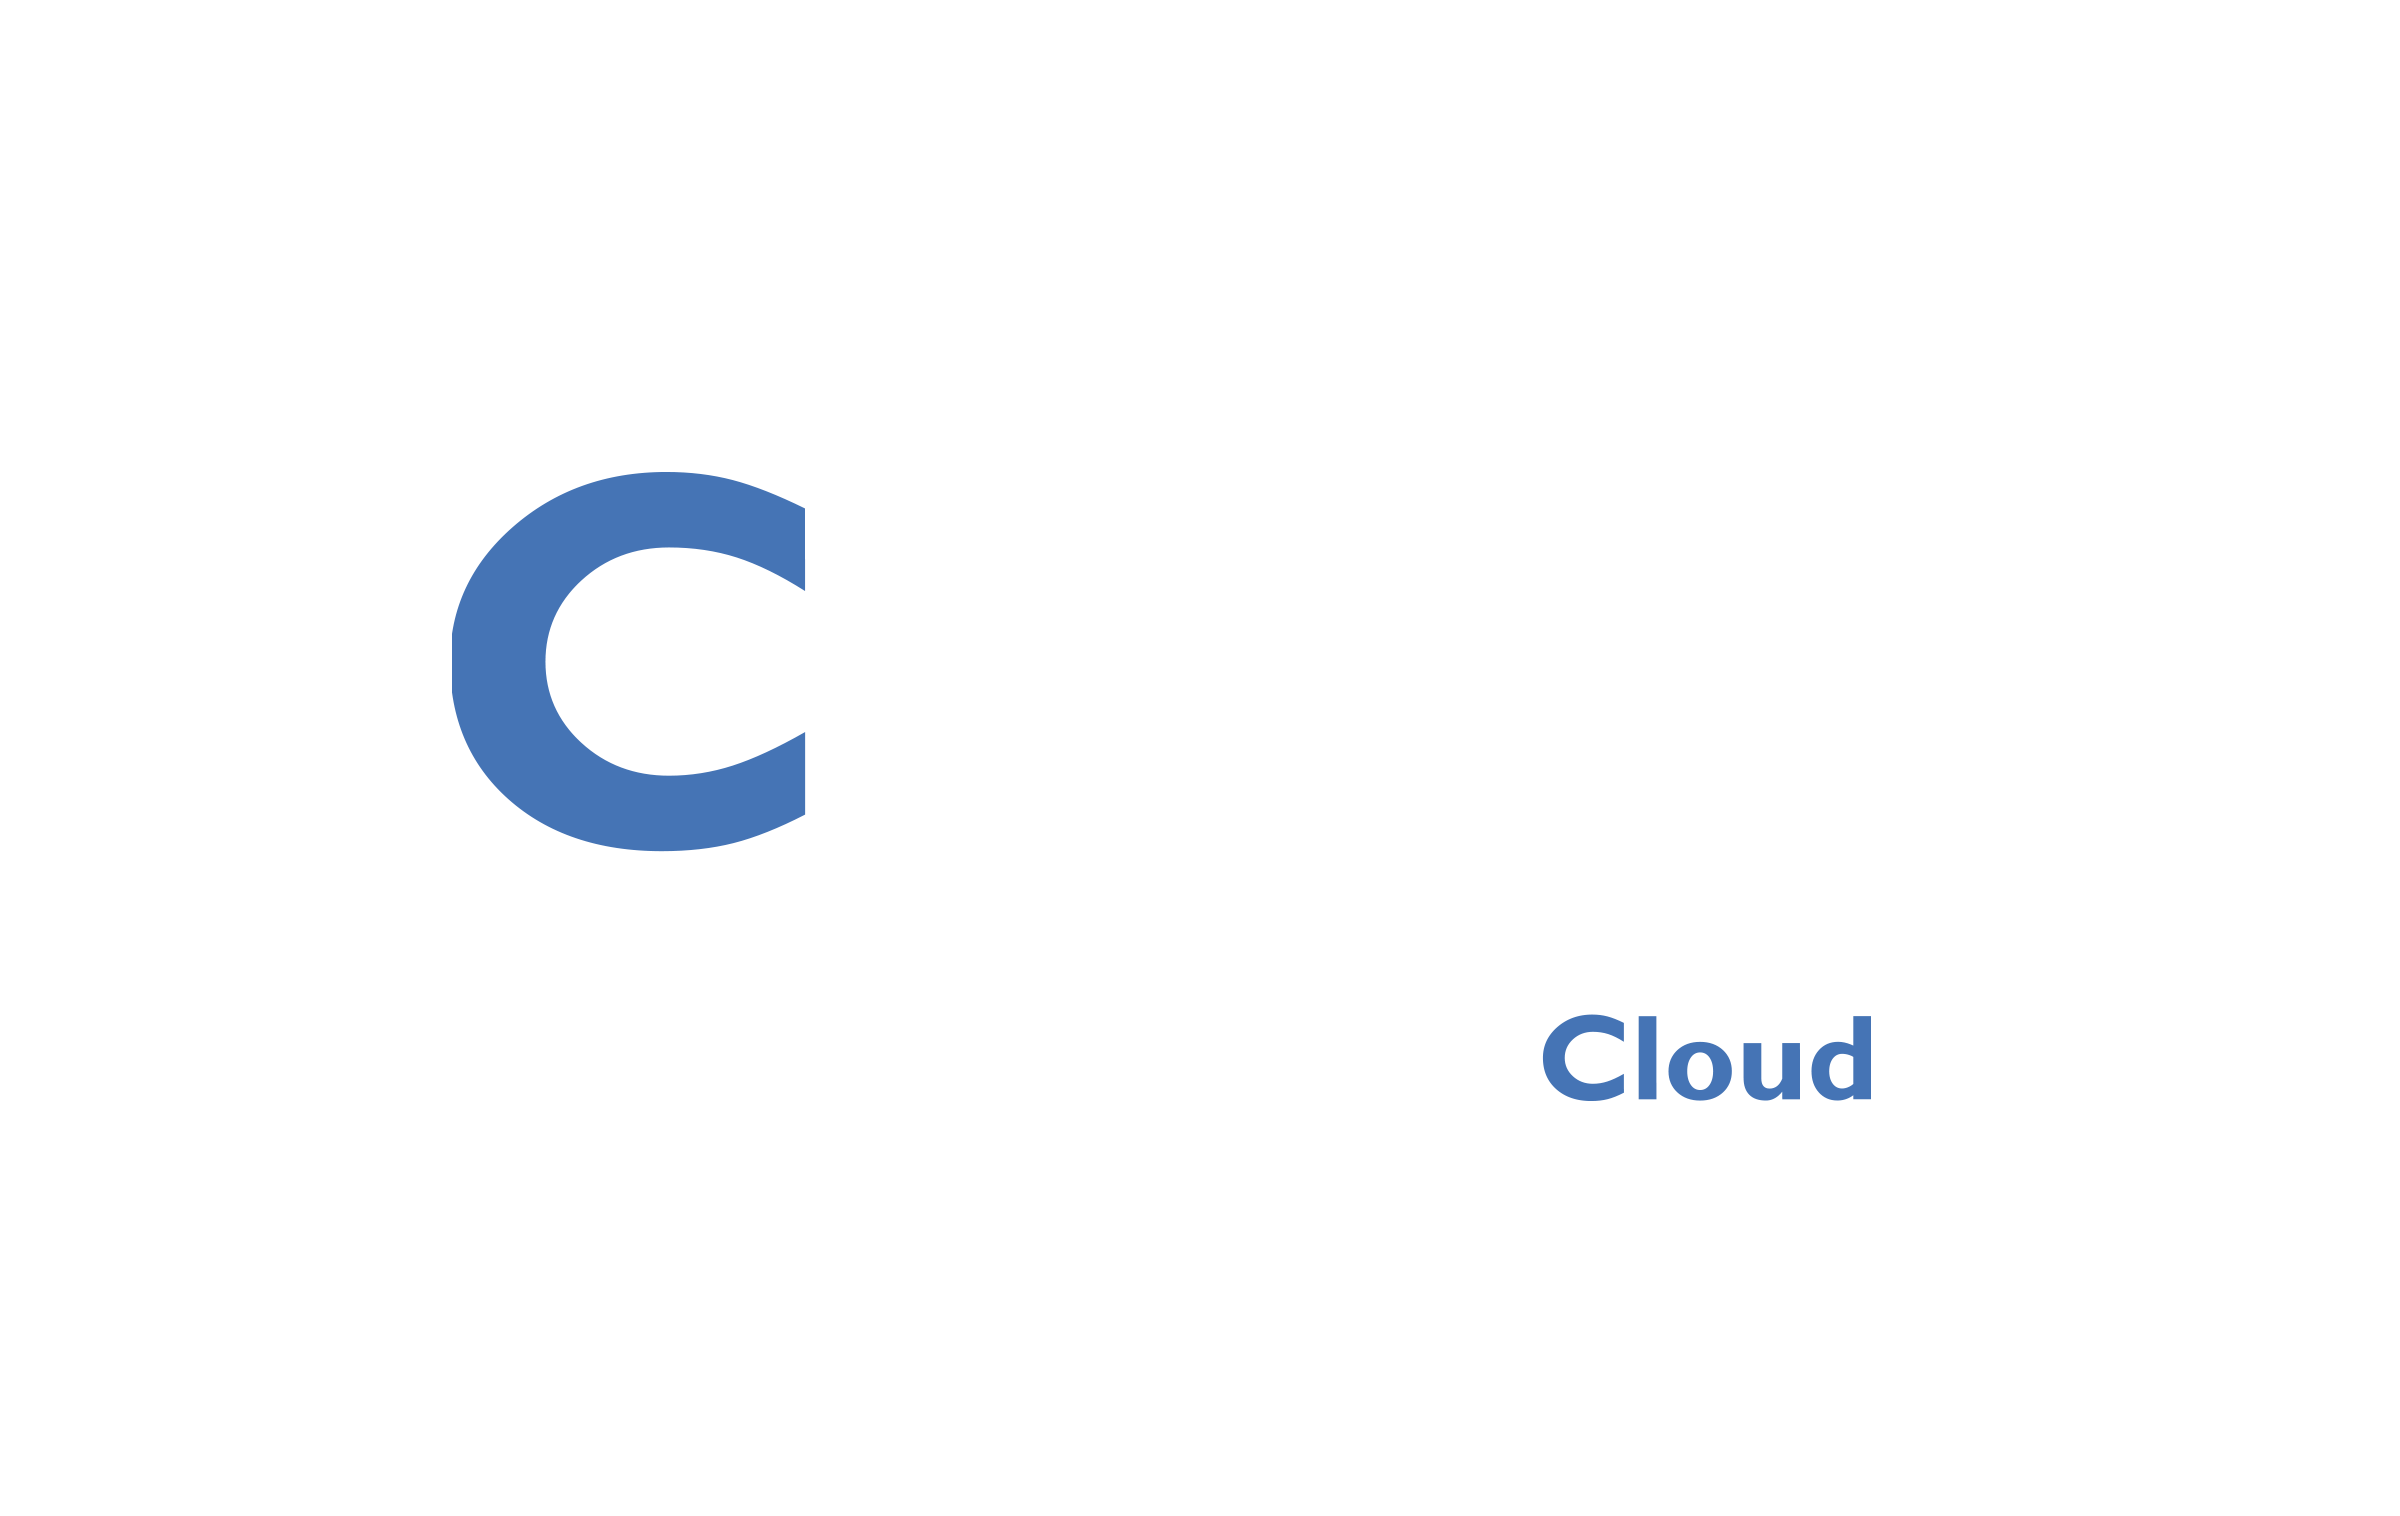 Cylog Cloud